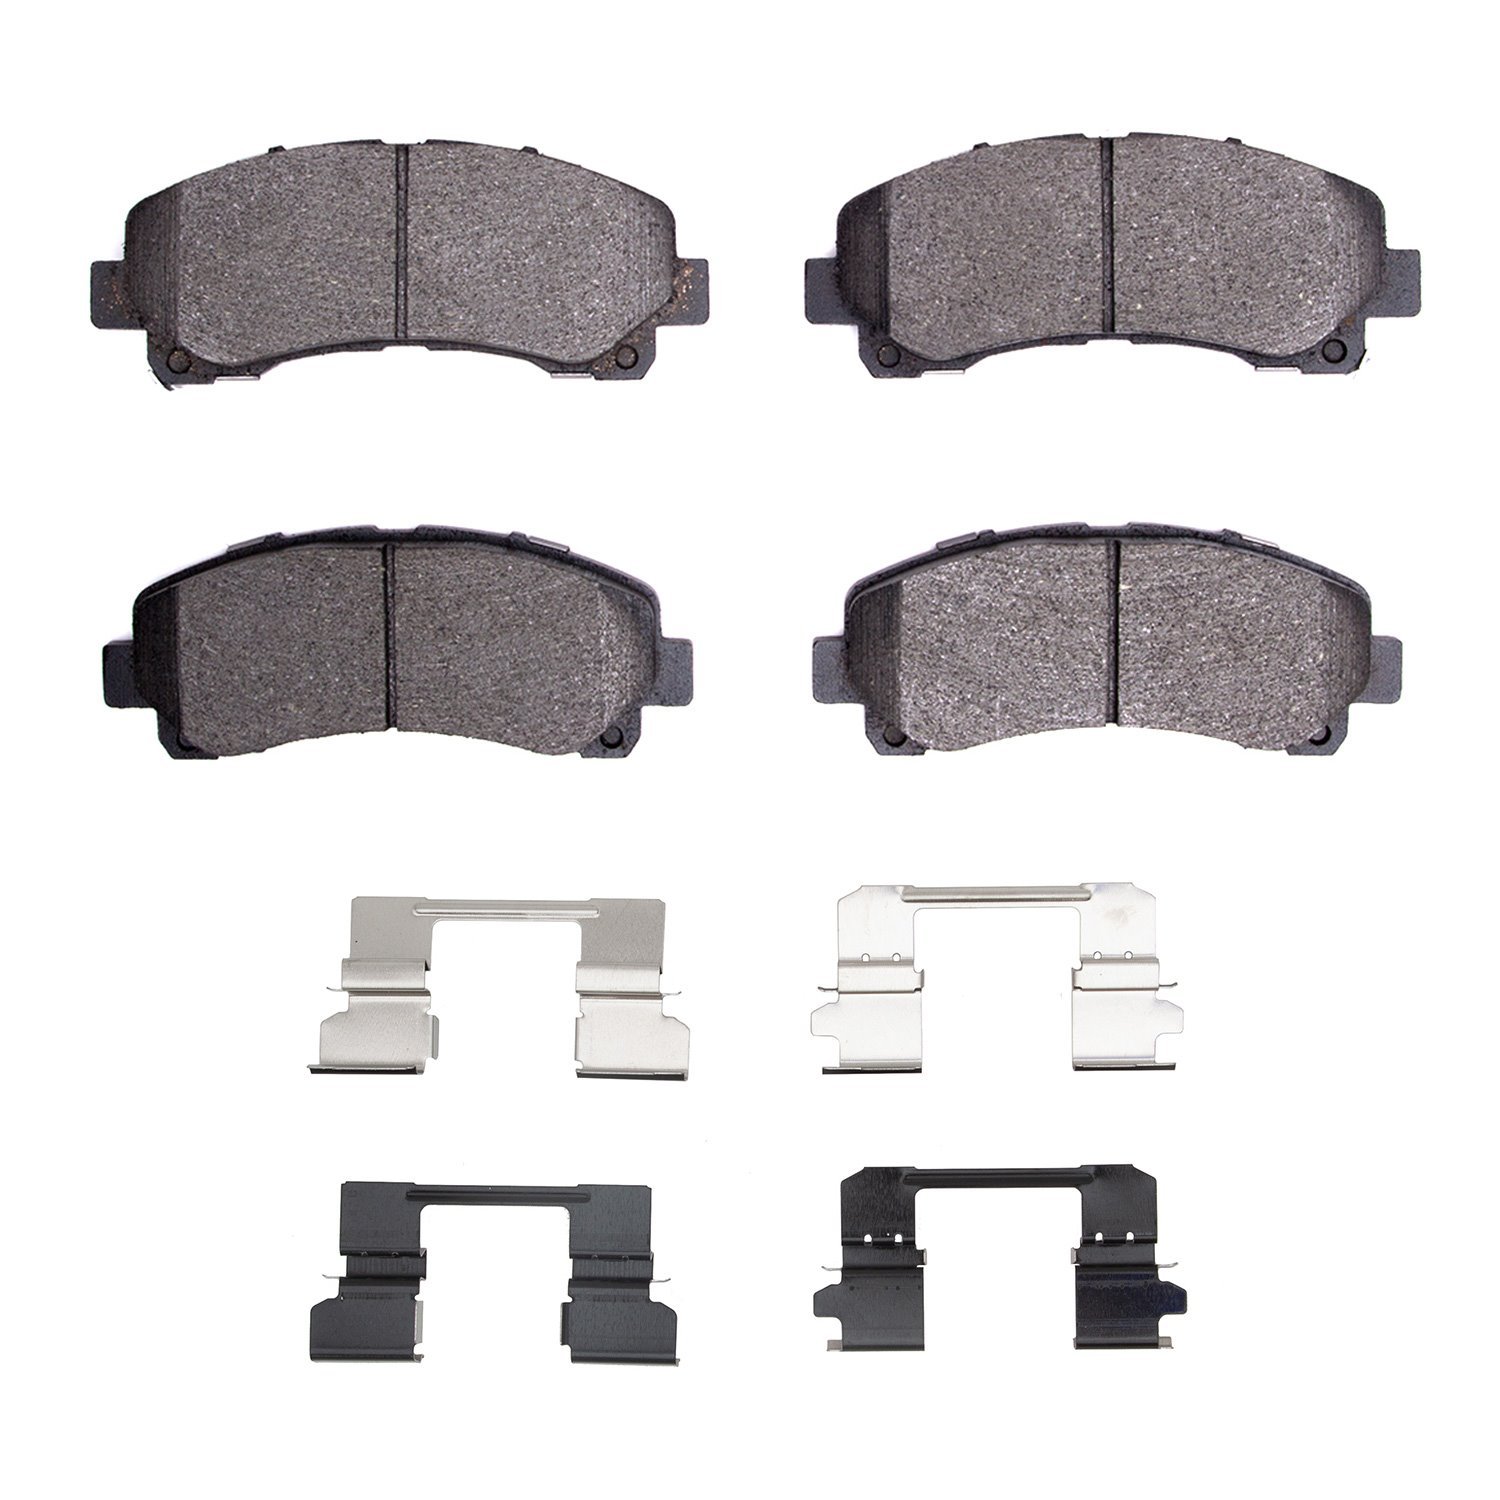 1310-1677-01 3000-Series Ceramic Brake Pads & Hardware Kit, 2012-2017 GM, Position: Front